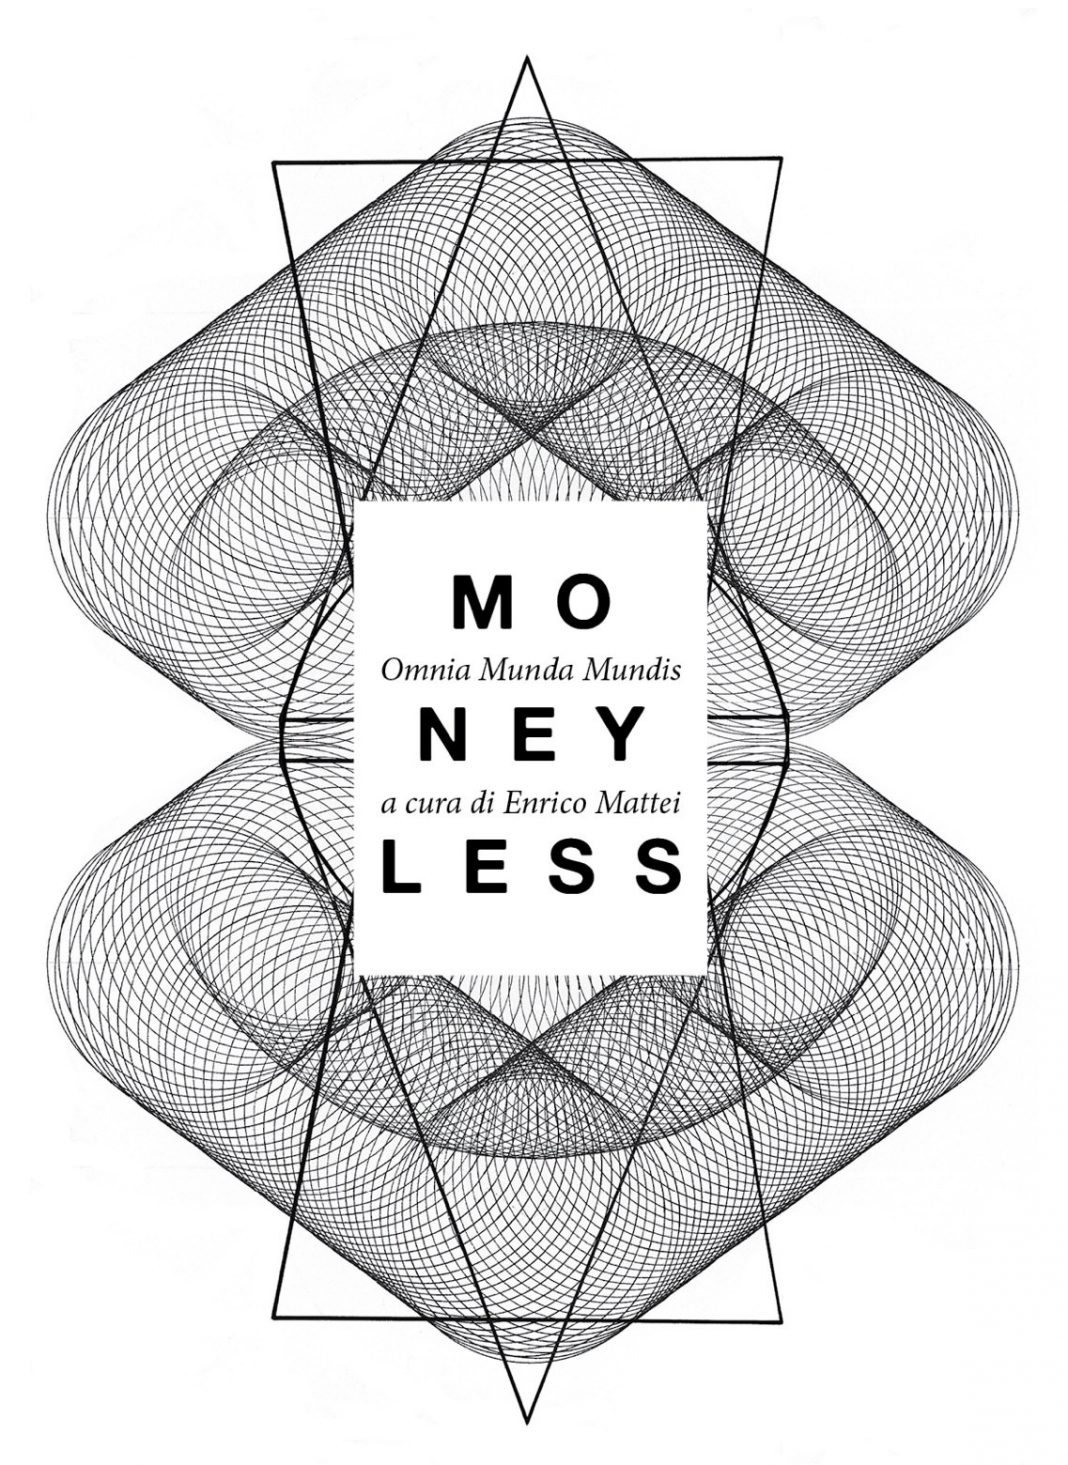 Moneyless – Omnia Munda Mundishttps://www.exibart.com/repository/media/eventi/2013/05/moneyless-8211-omnia-munda-mundis-1068x1465.jpg